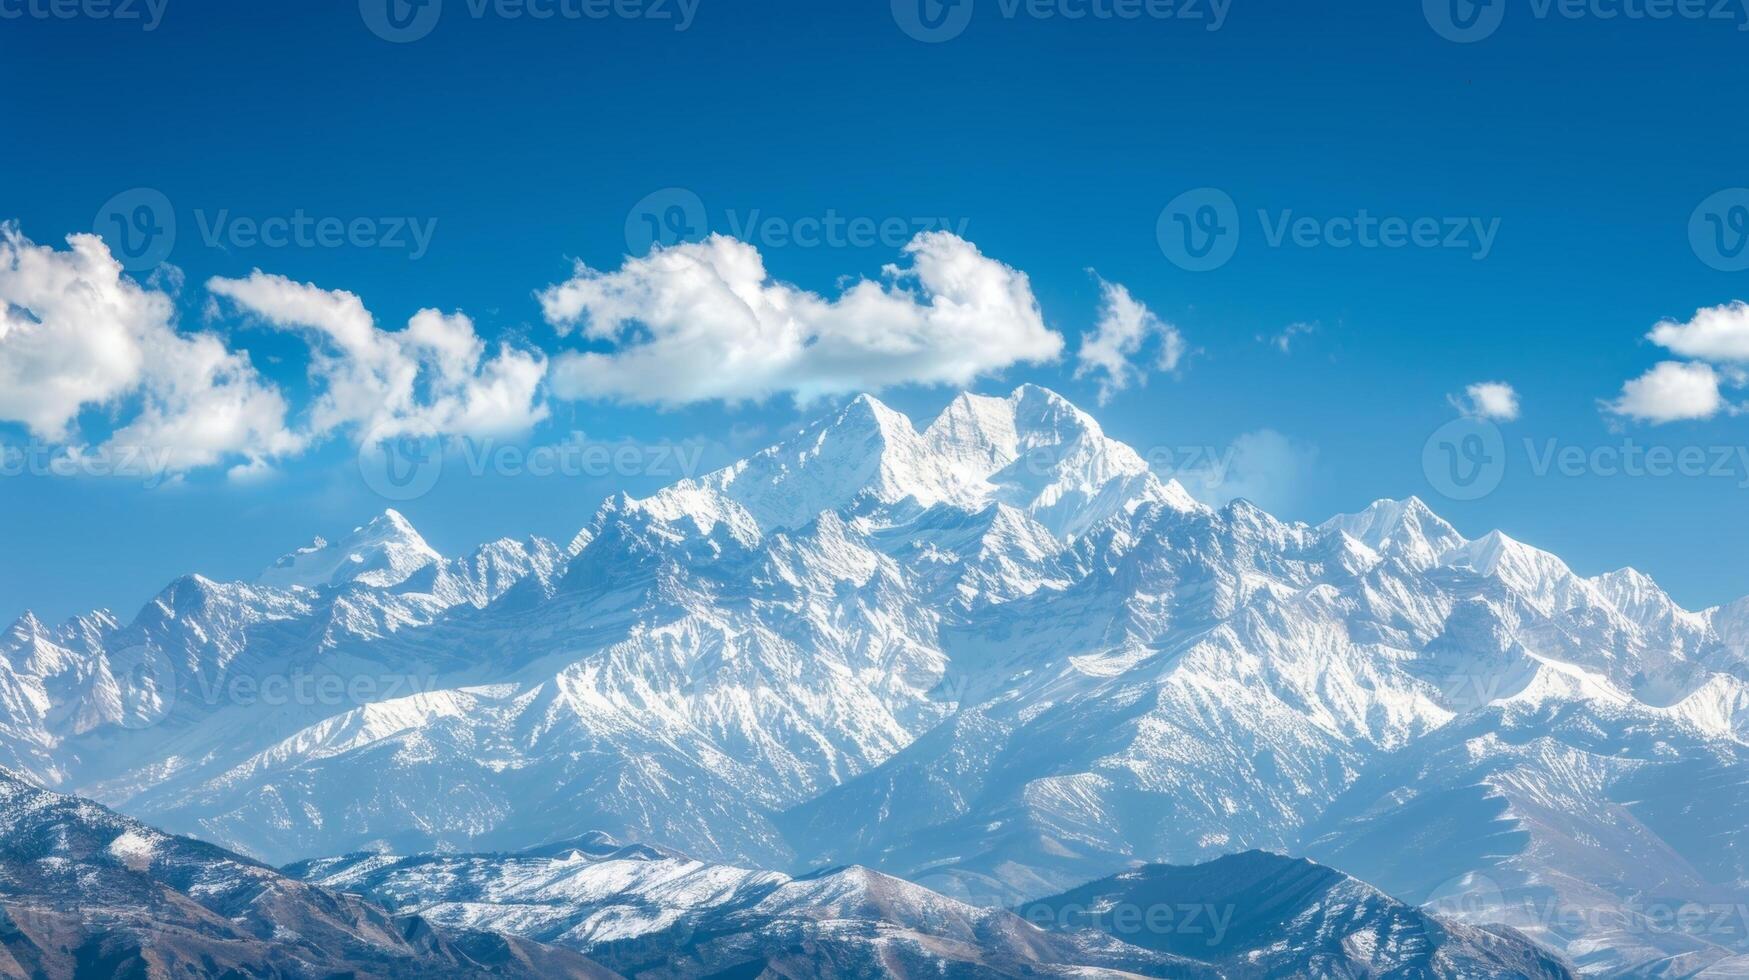 une tranquille scène de une Montagne intervalle avec couvert de neige pics et cristal clair bleu ciels étant utilisé comme le focal point pour quelques uns guidé imagerie méditation photo